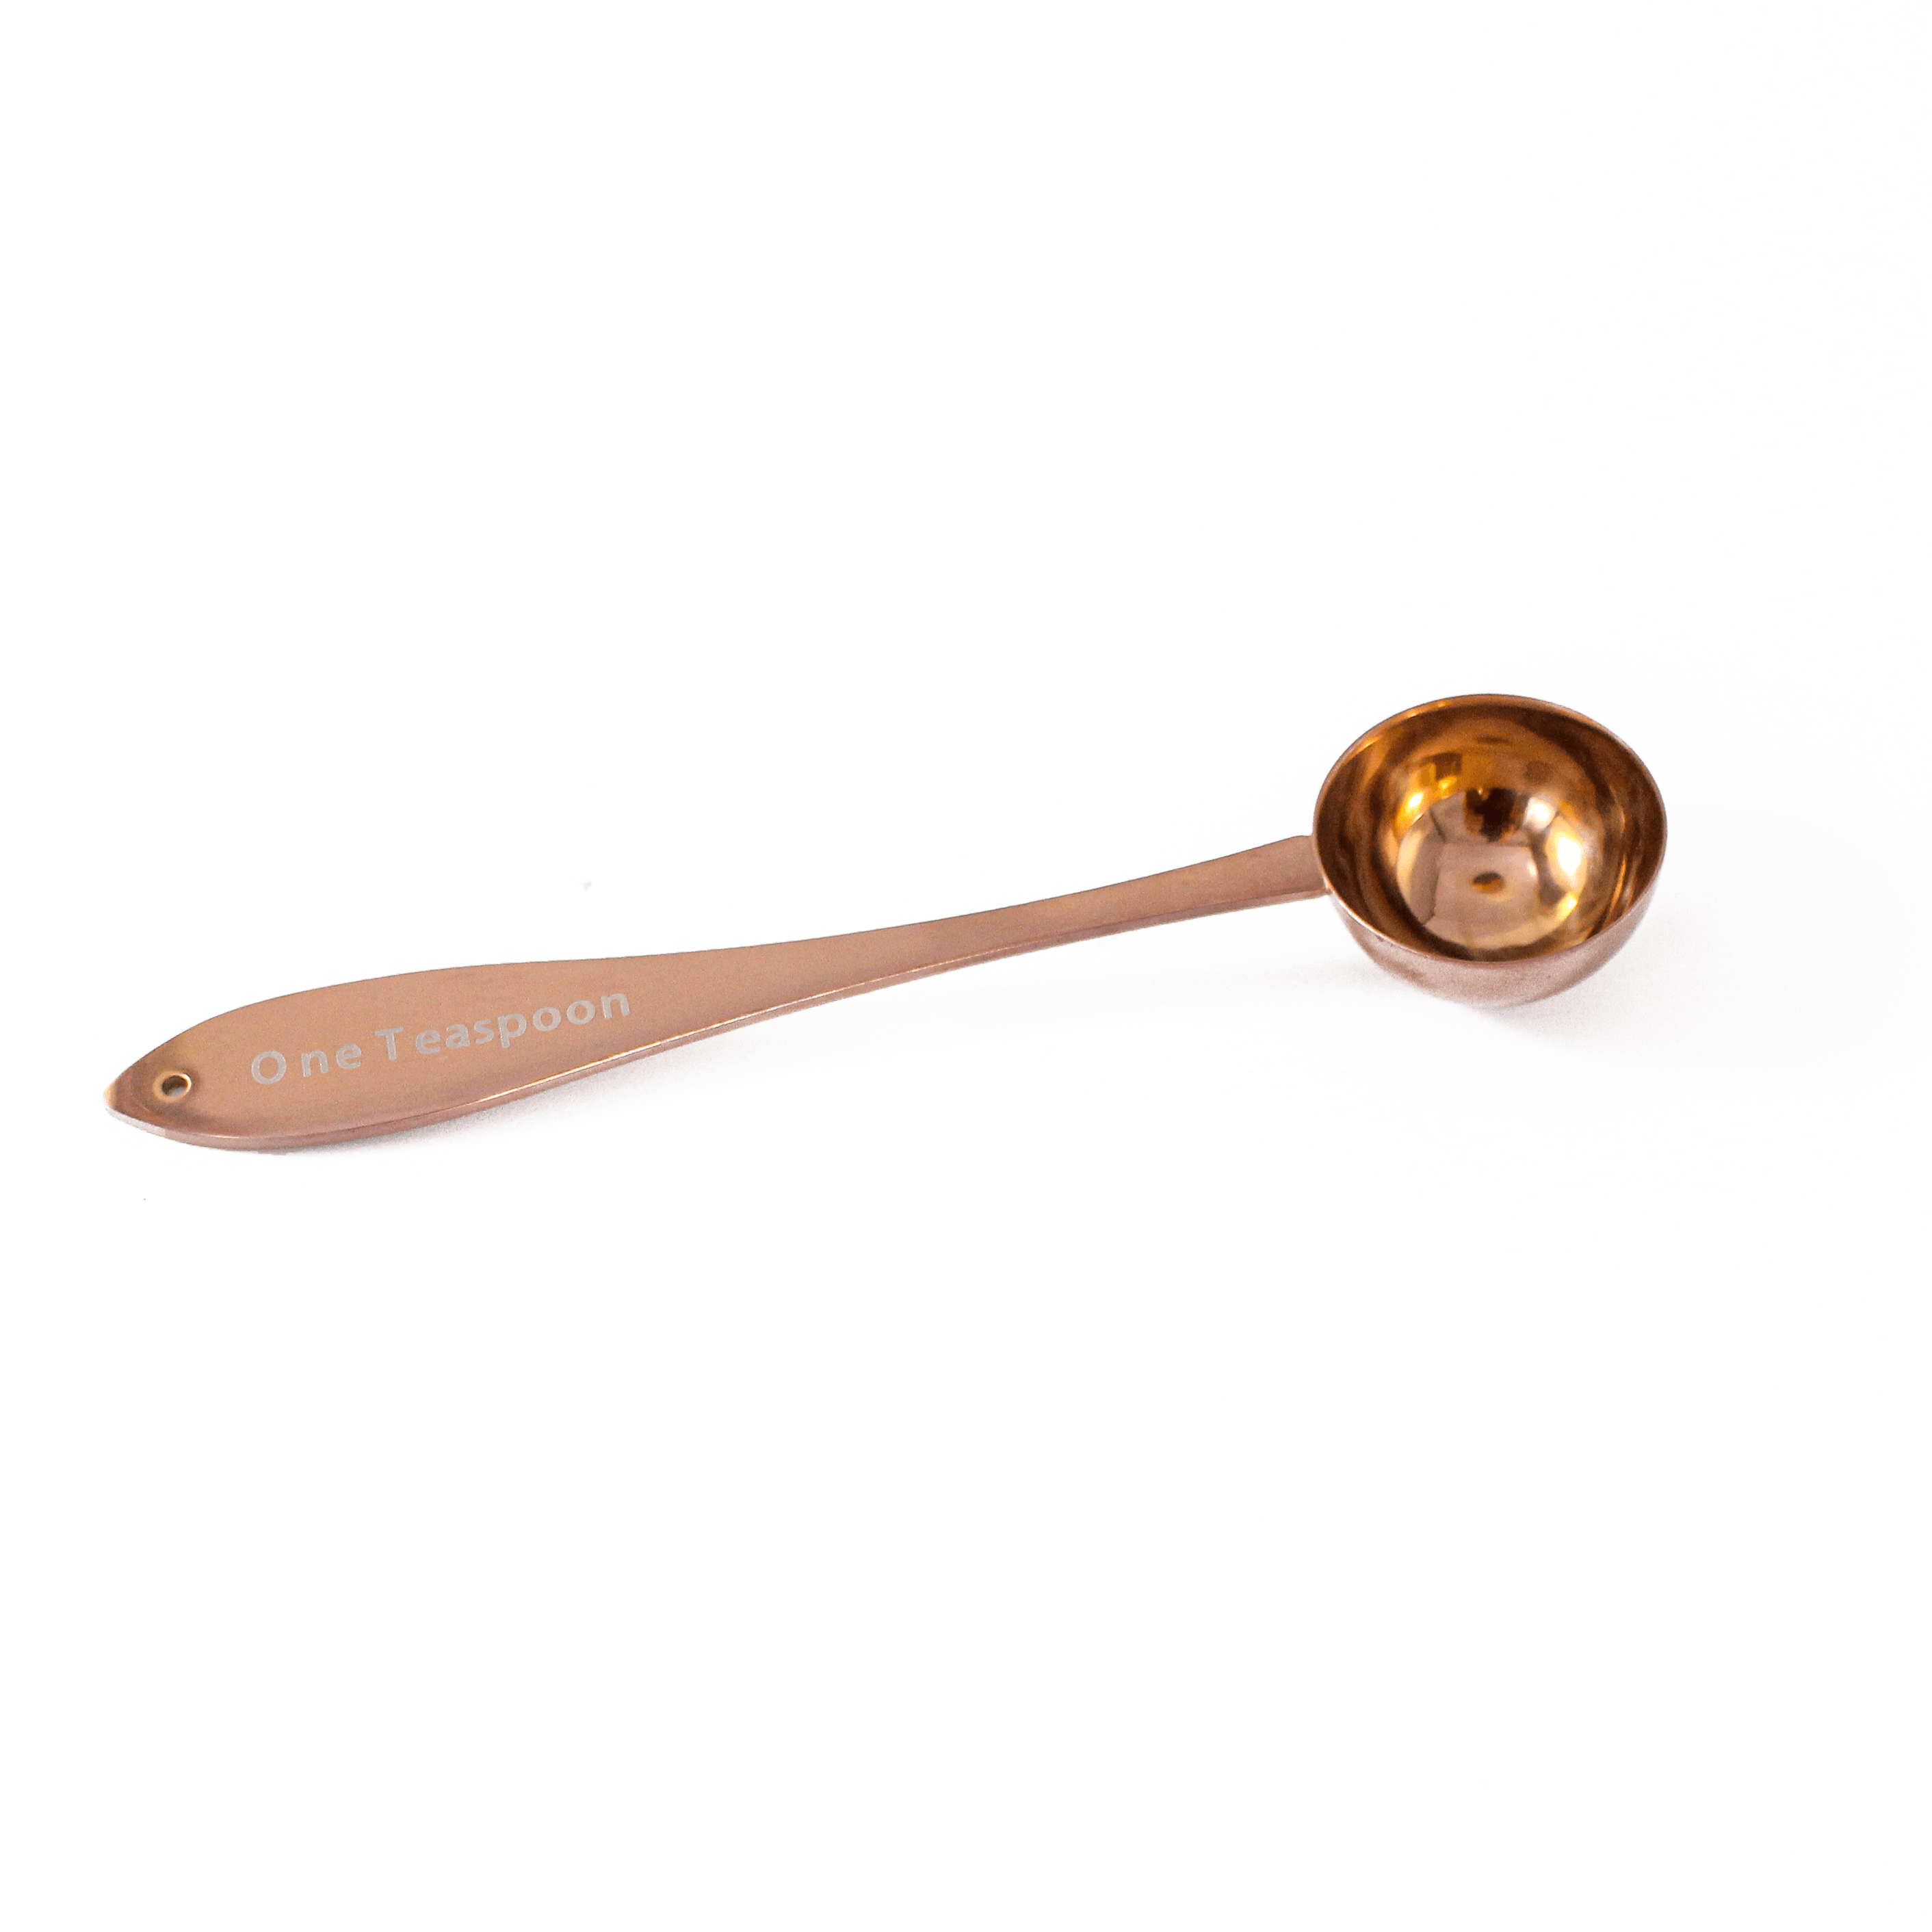 Sampler Spoons 1 Teaspoon